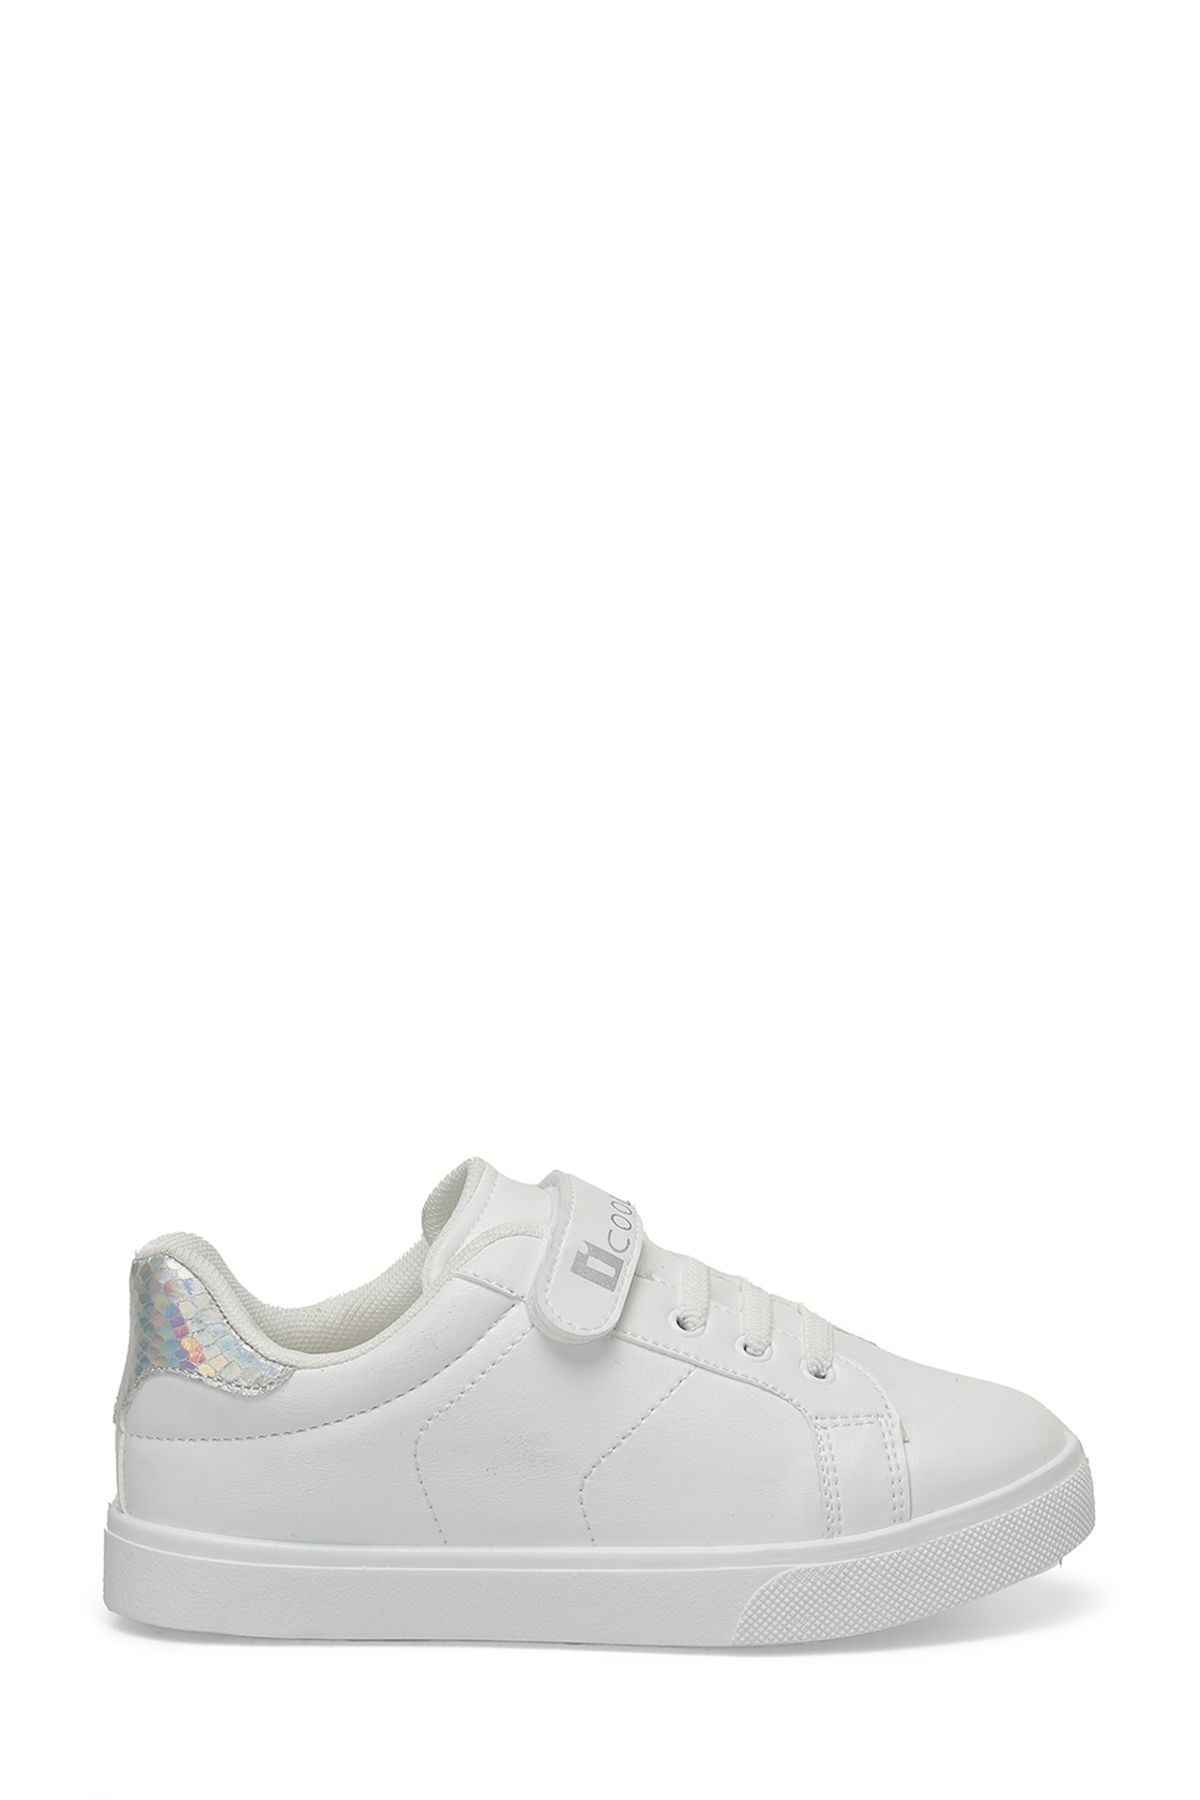 Icool MILA 4FX Beyaz Kız Çocuk Sneaker